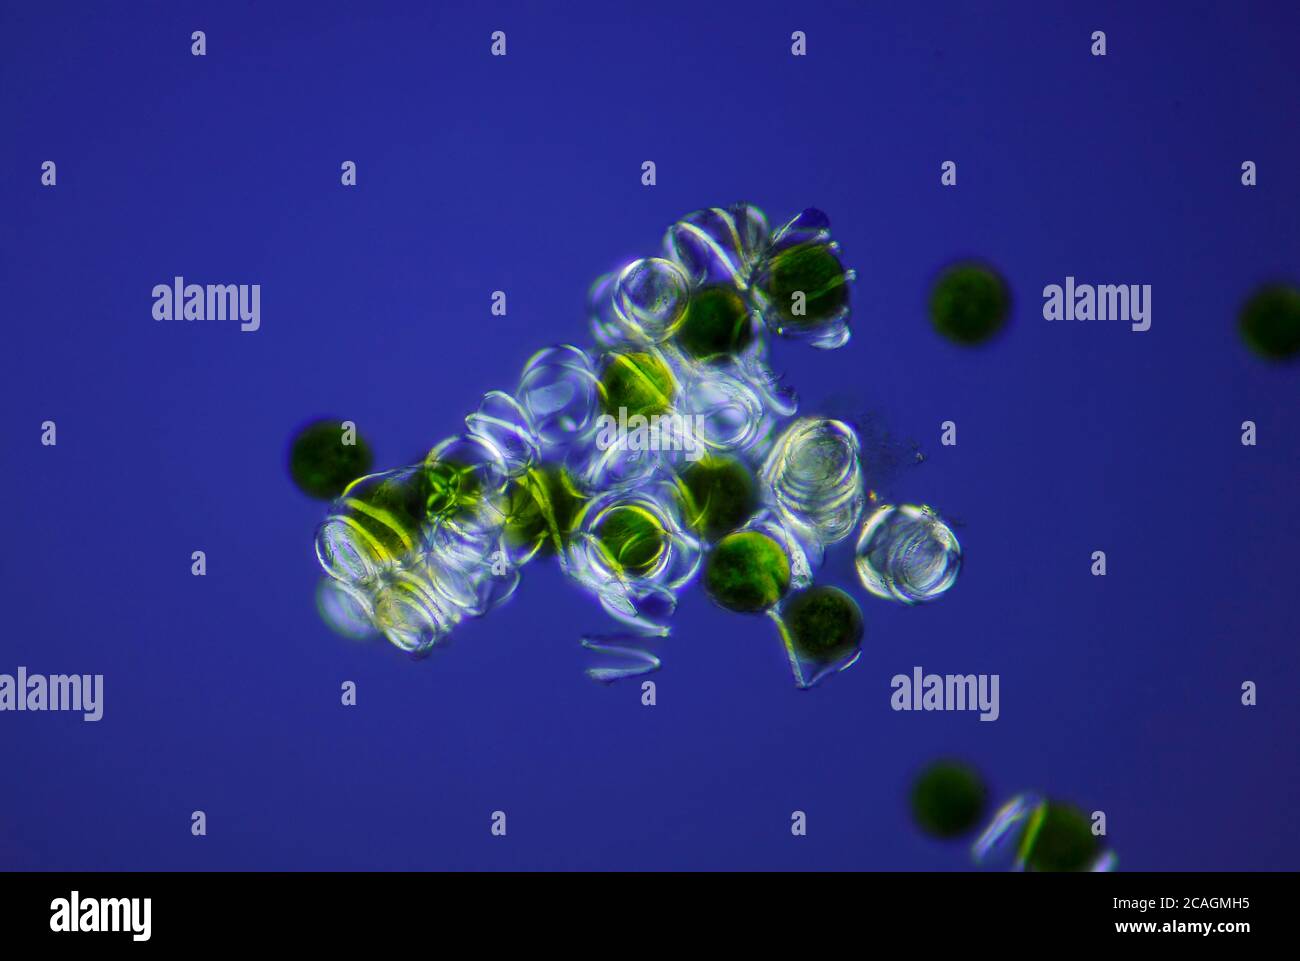 Mikroskopische Ansicht eines Schachtelhalms (Equisetum arvense) Sporen mit Eellern. Polarisiertes Licht mit gekreuzten Polarisatoren. Stockfoto